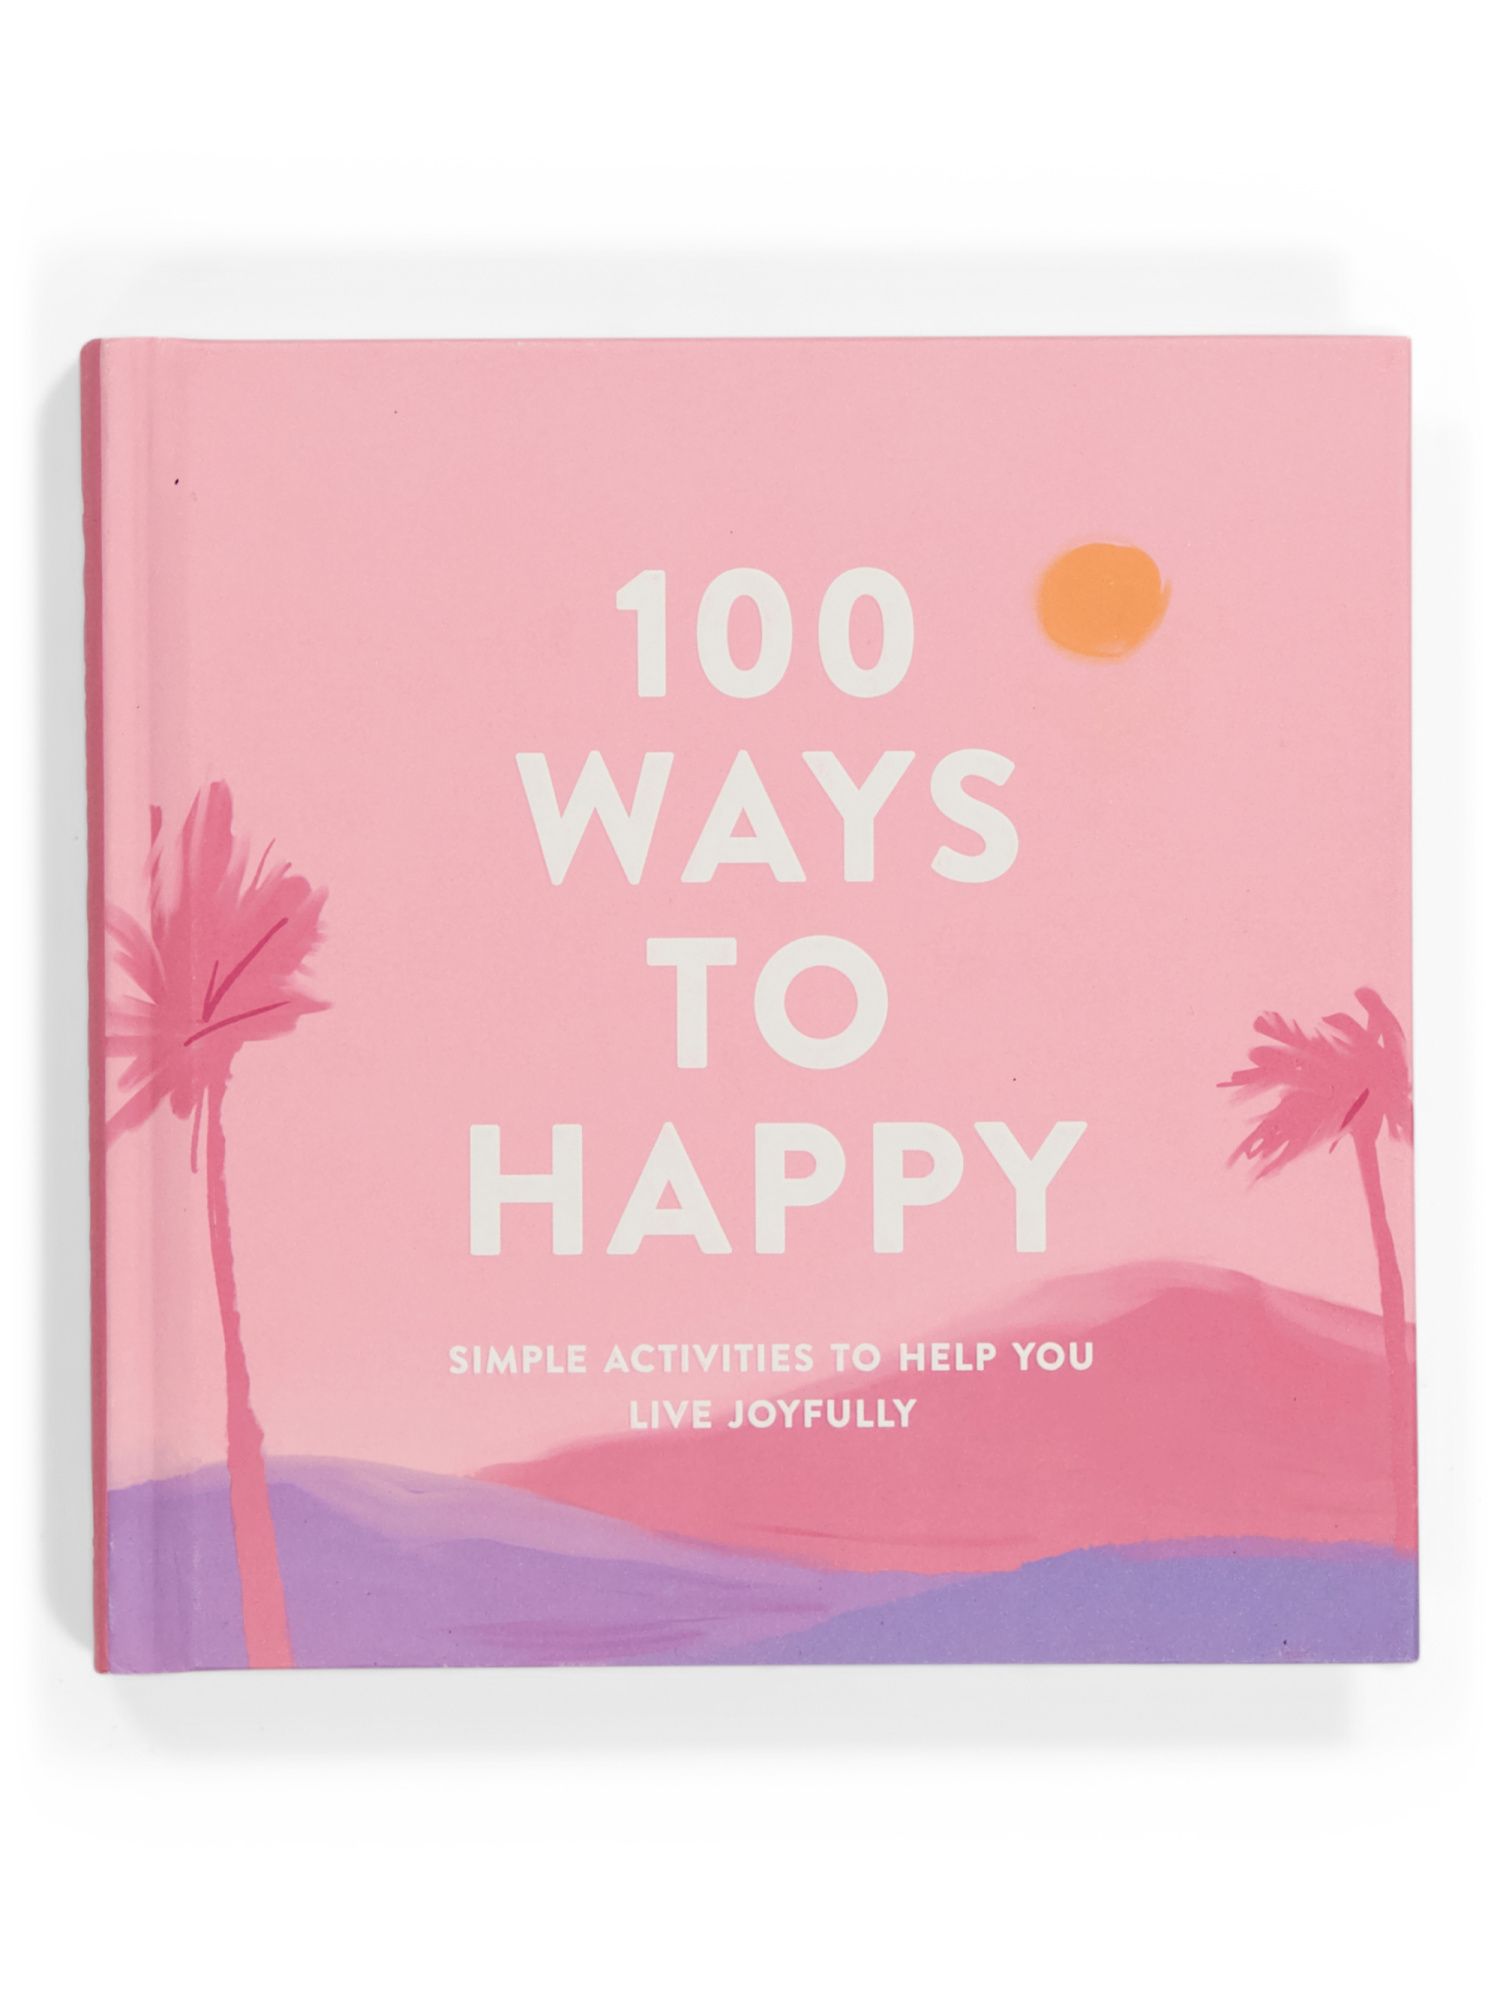 100 Ways To Happy | TJ Maxx